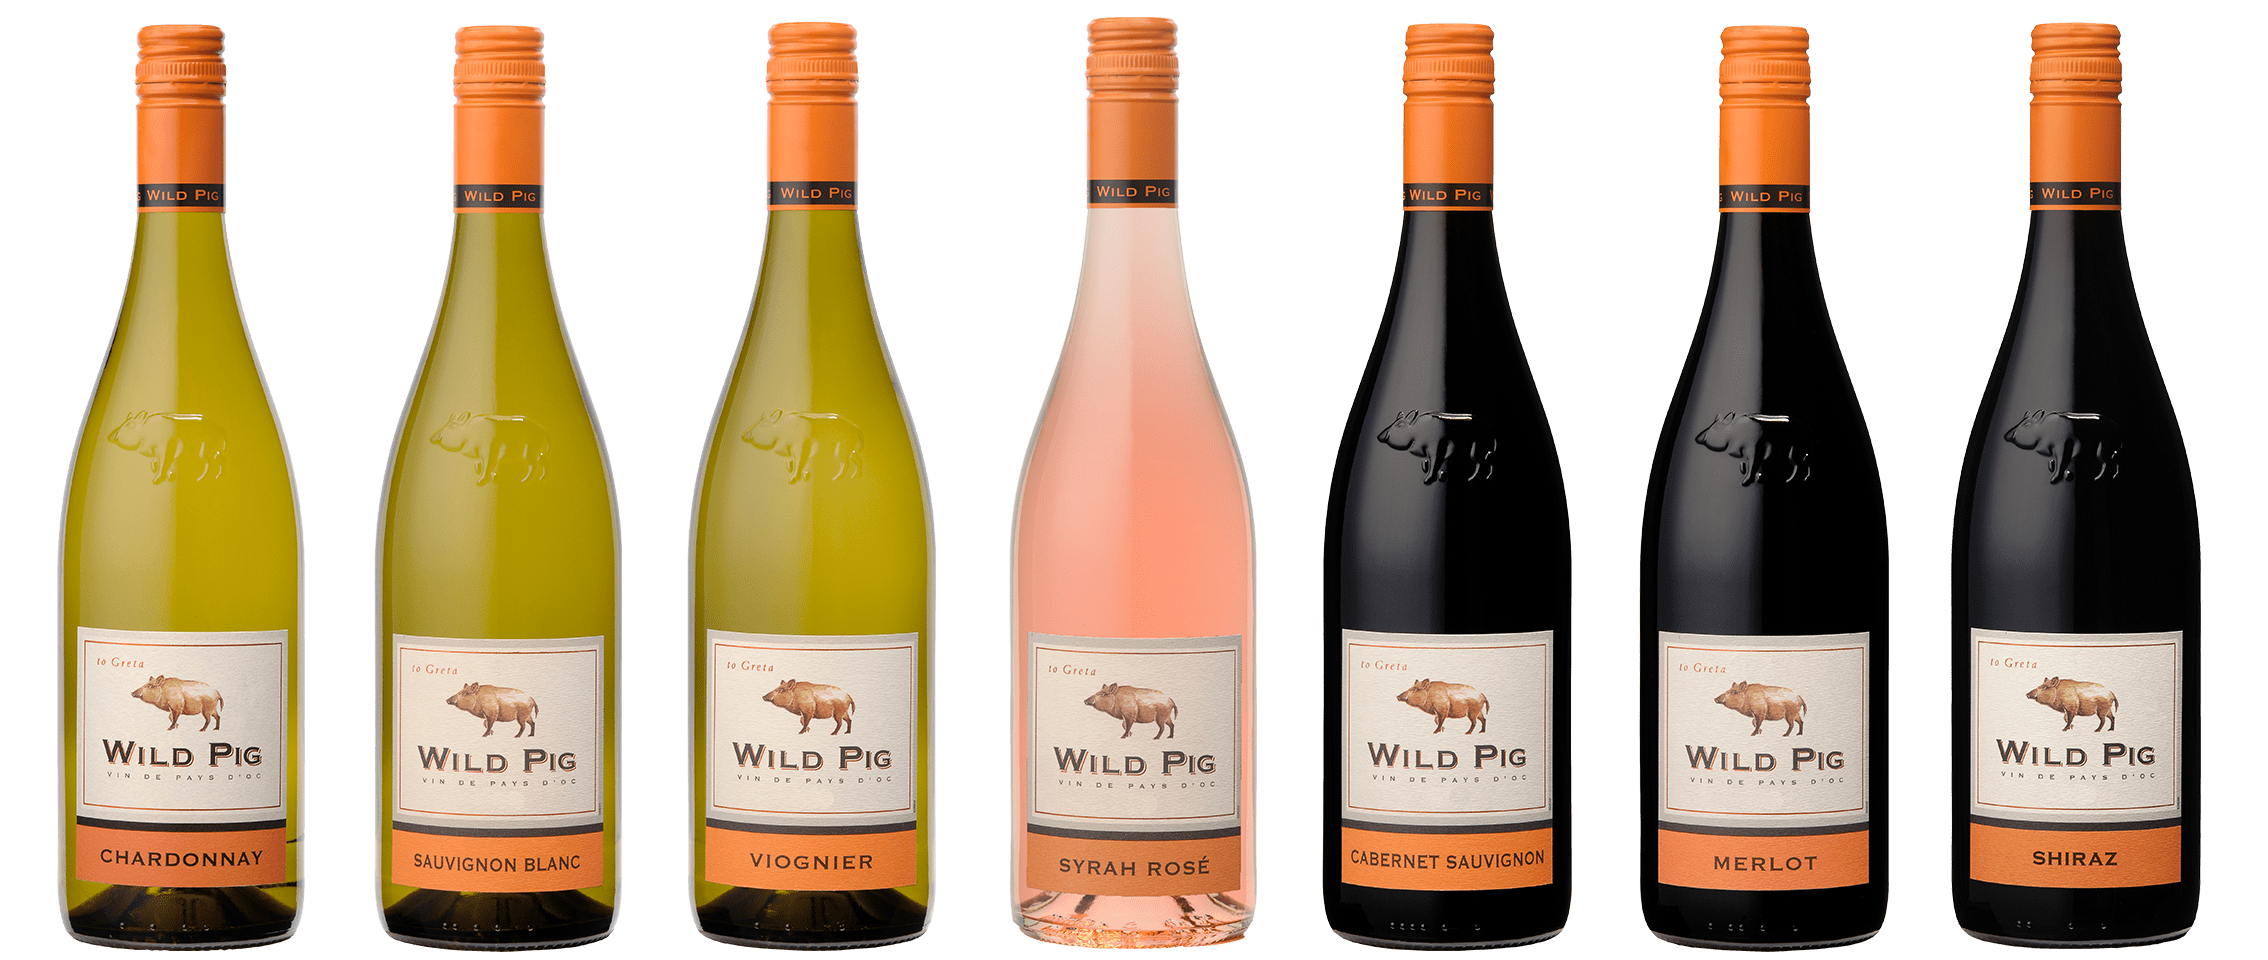 wild pig wijnen